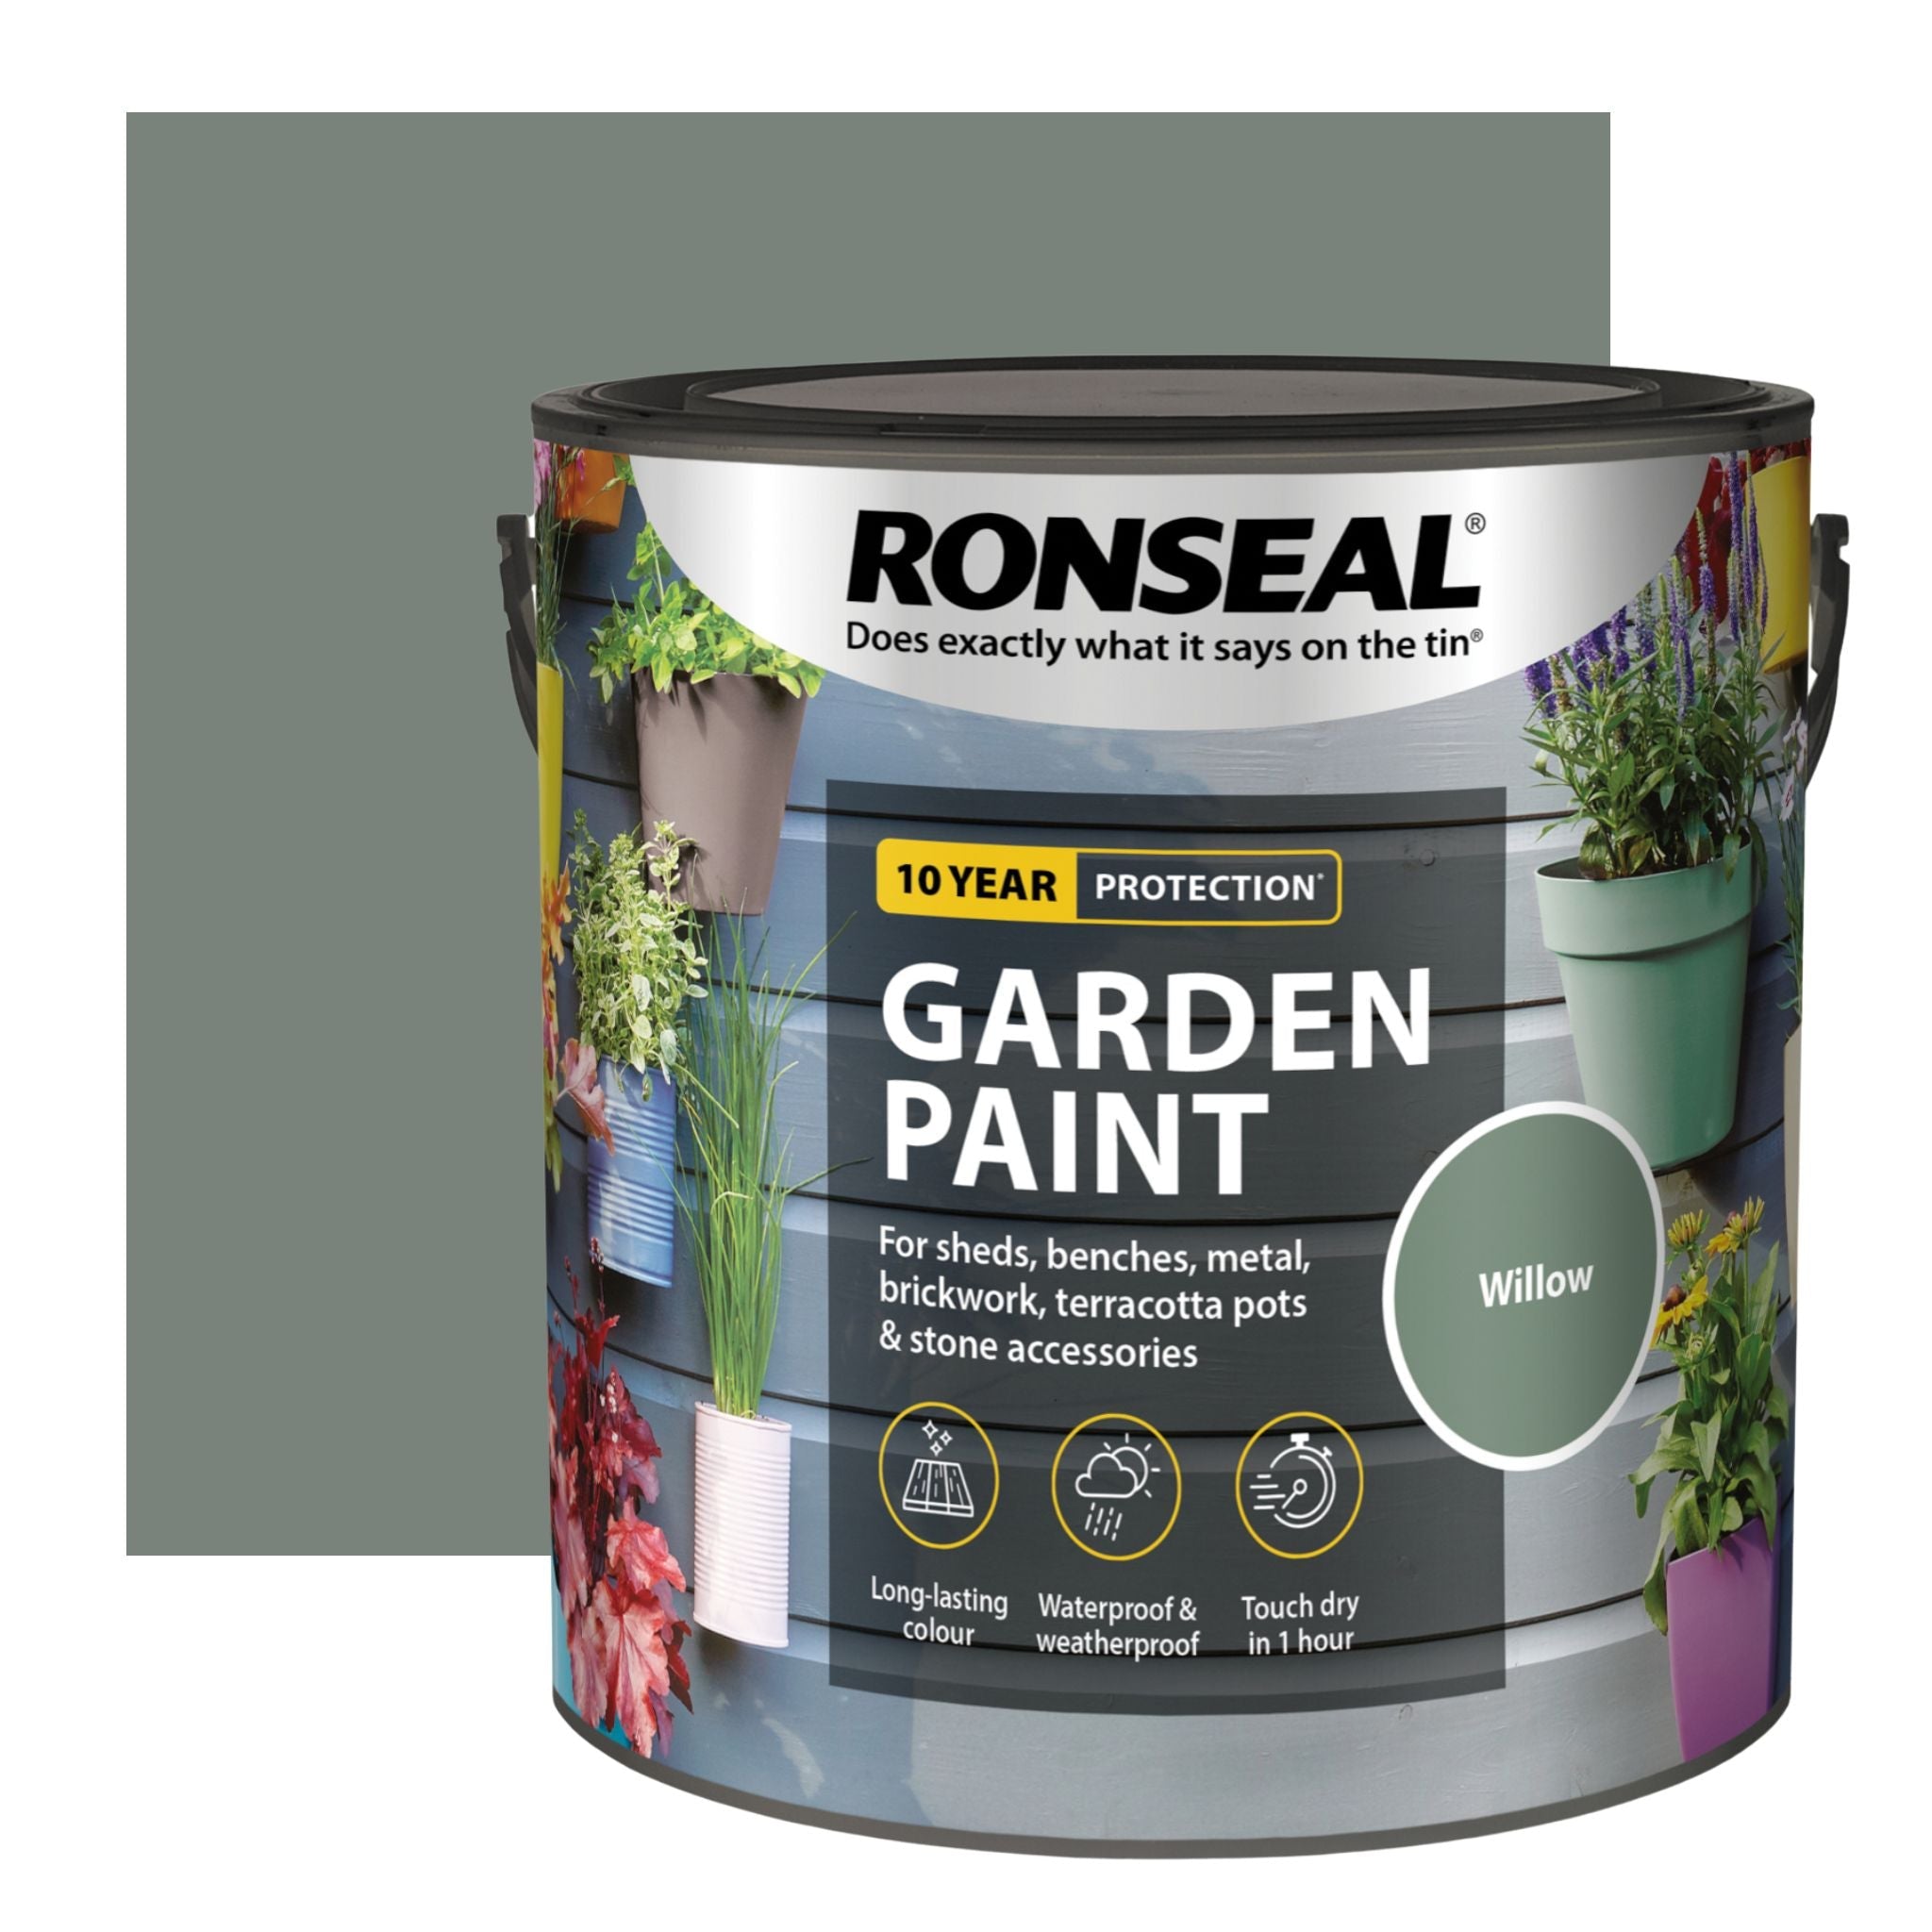 Ronseal Garden Paint - Restorate-5010214874200